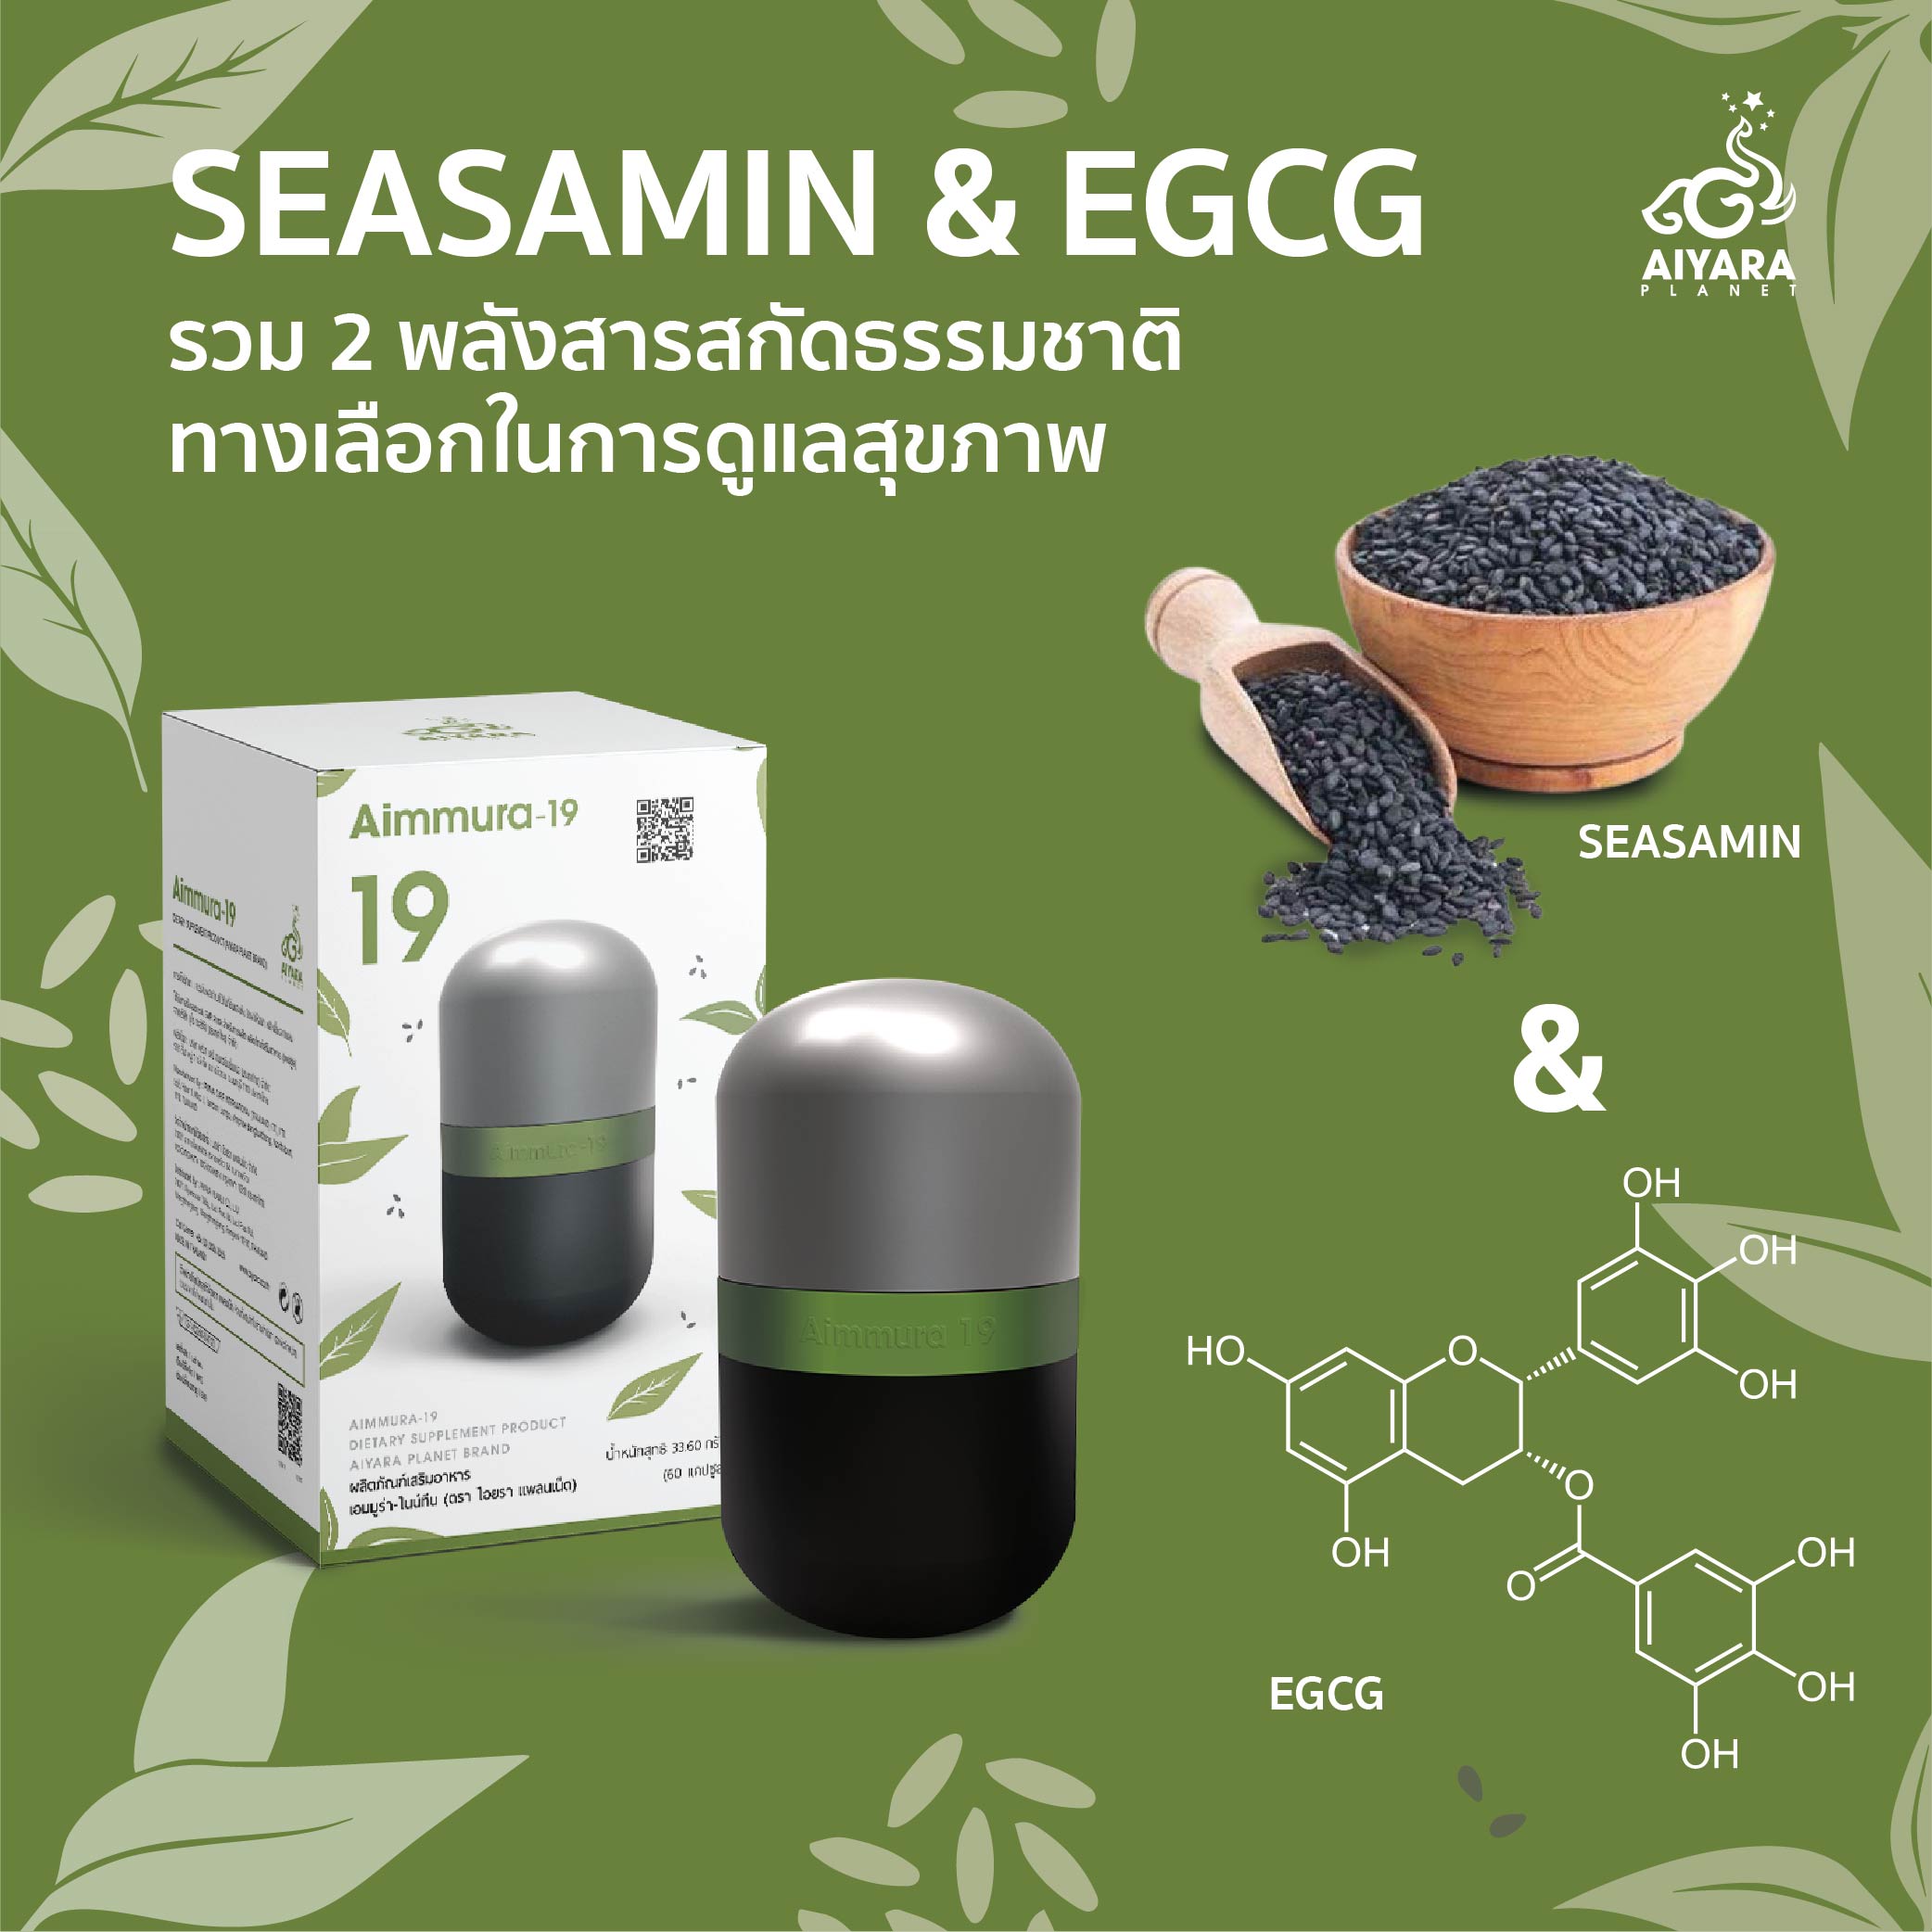 (Thai) SEASAMIN & EGCG